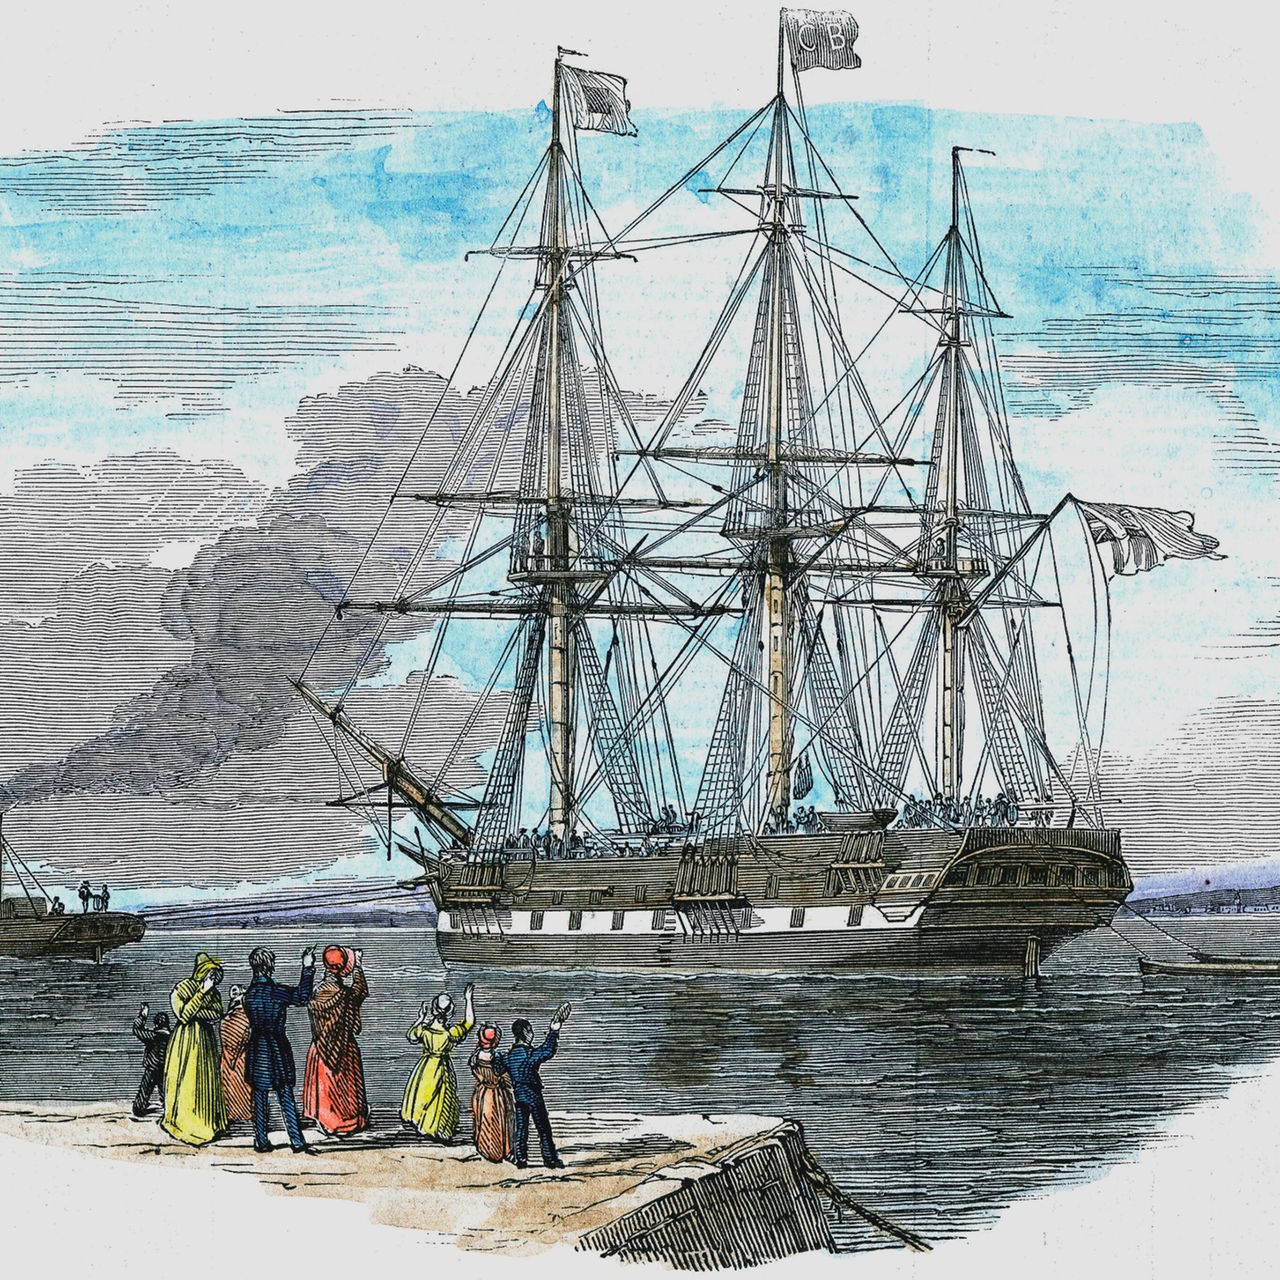 Britisches Auswandererschiff wird vor dem Auslaufen nach Sydney, Australien, aus dem Hafen geschleppt (Illustration)